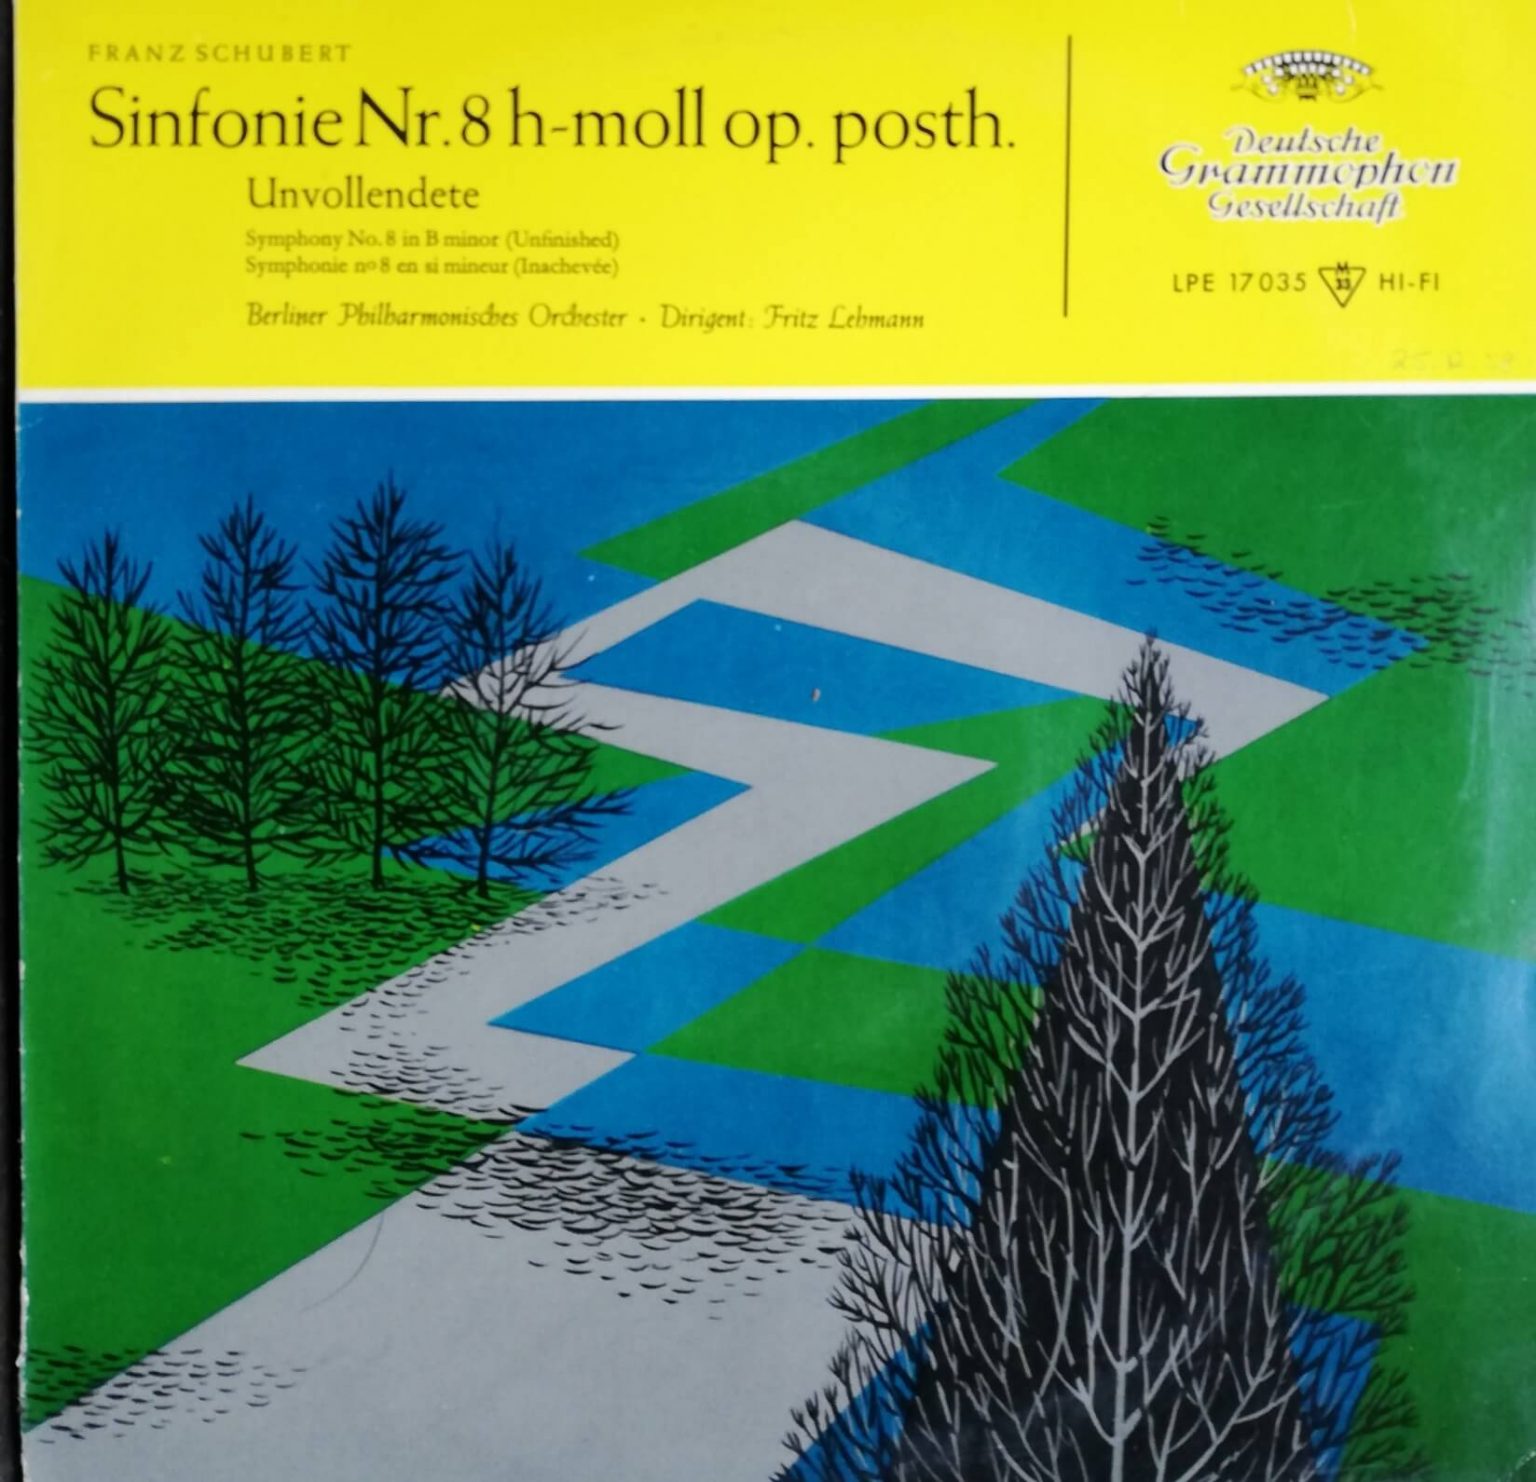 Okładka płyty winylowej artysty Franz Schubert o tytule Sinfonie nr. 8